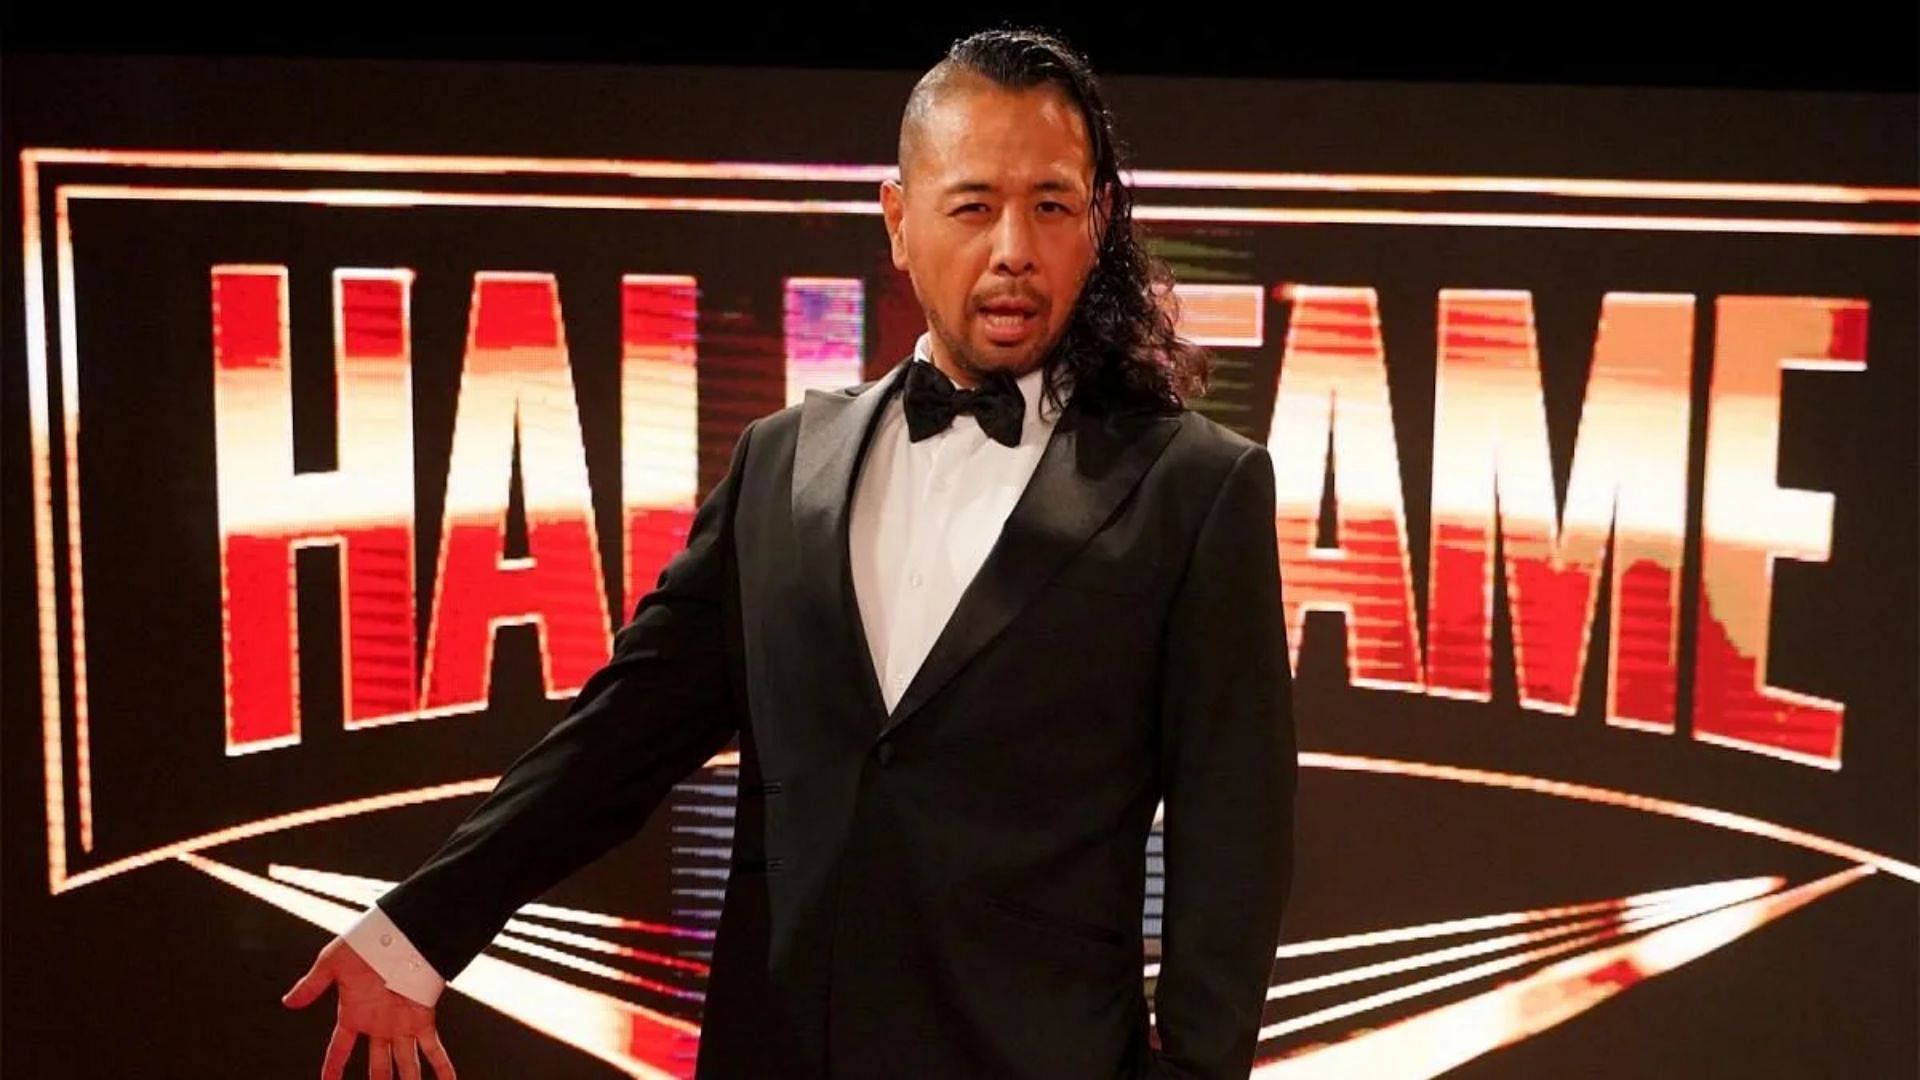 Shinsuke Nakamura has intrigued WWE fans of late